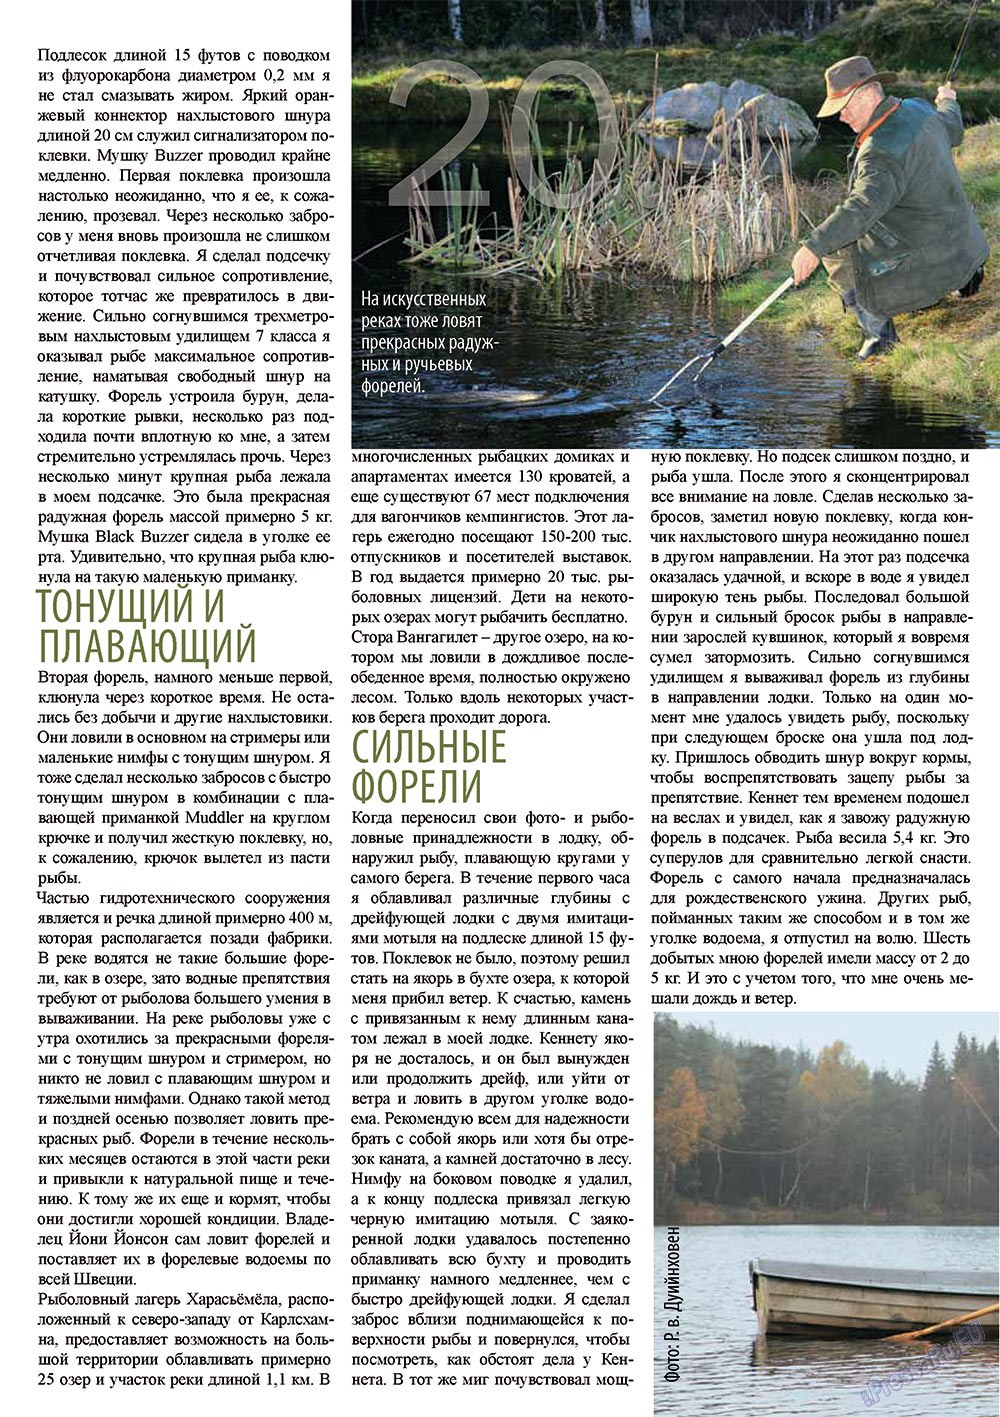 Рыбалка Plus, журнал. 2011 №11 стр.20